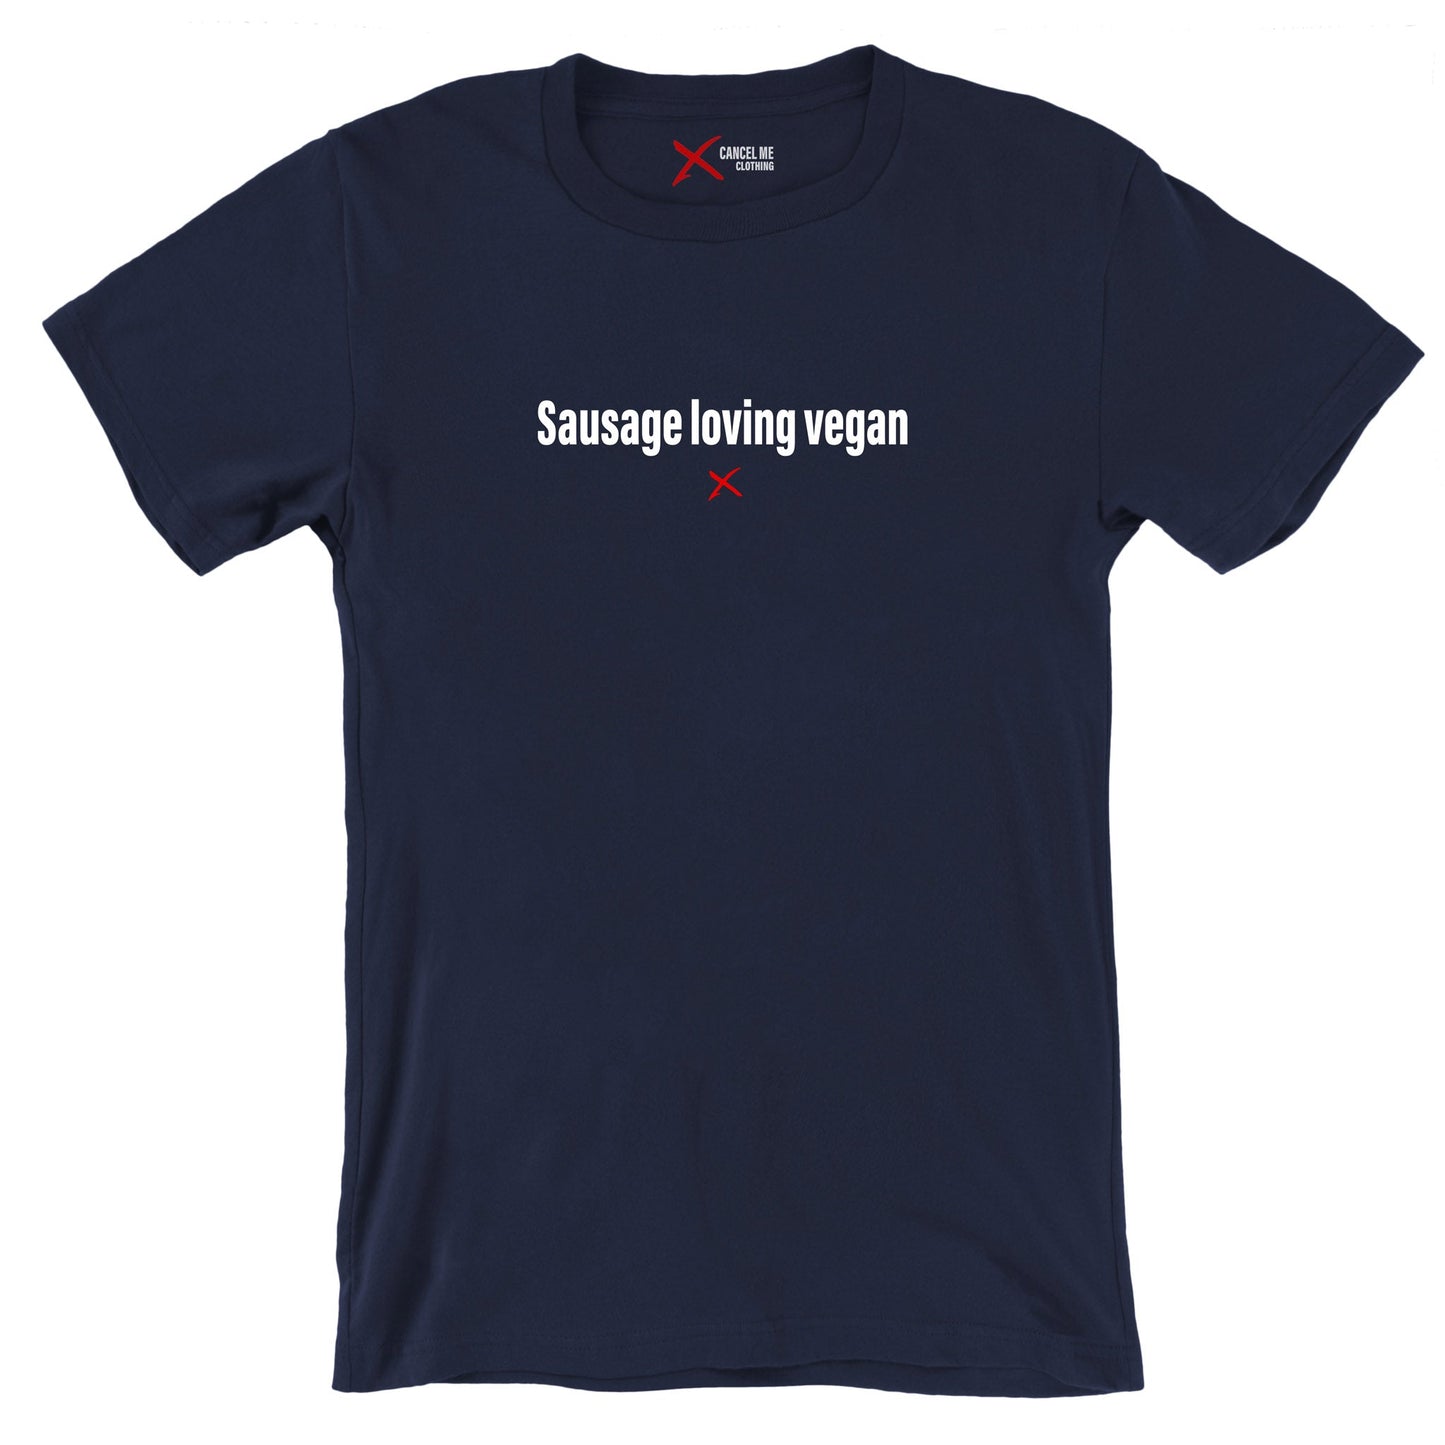 Sausage loving vegan - Shirt